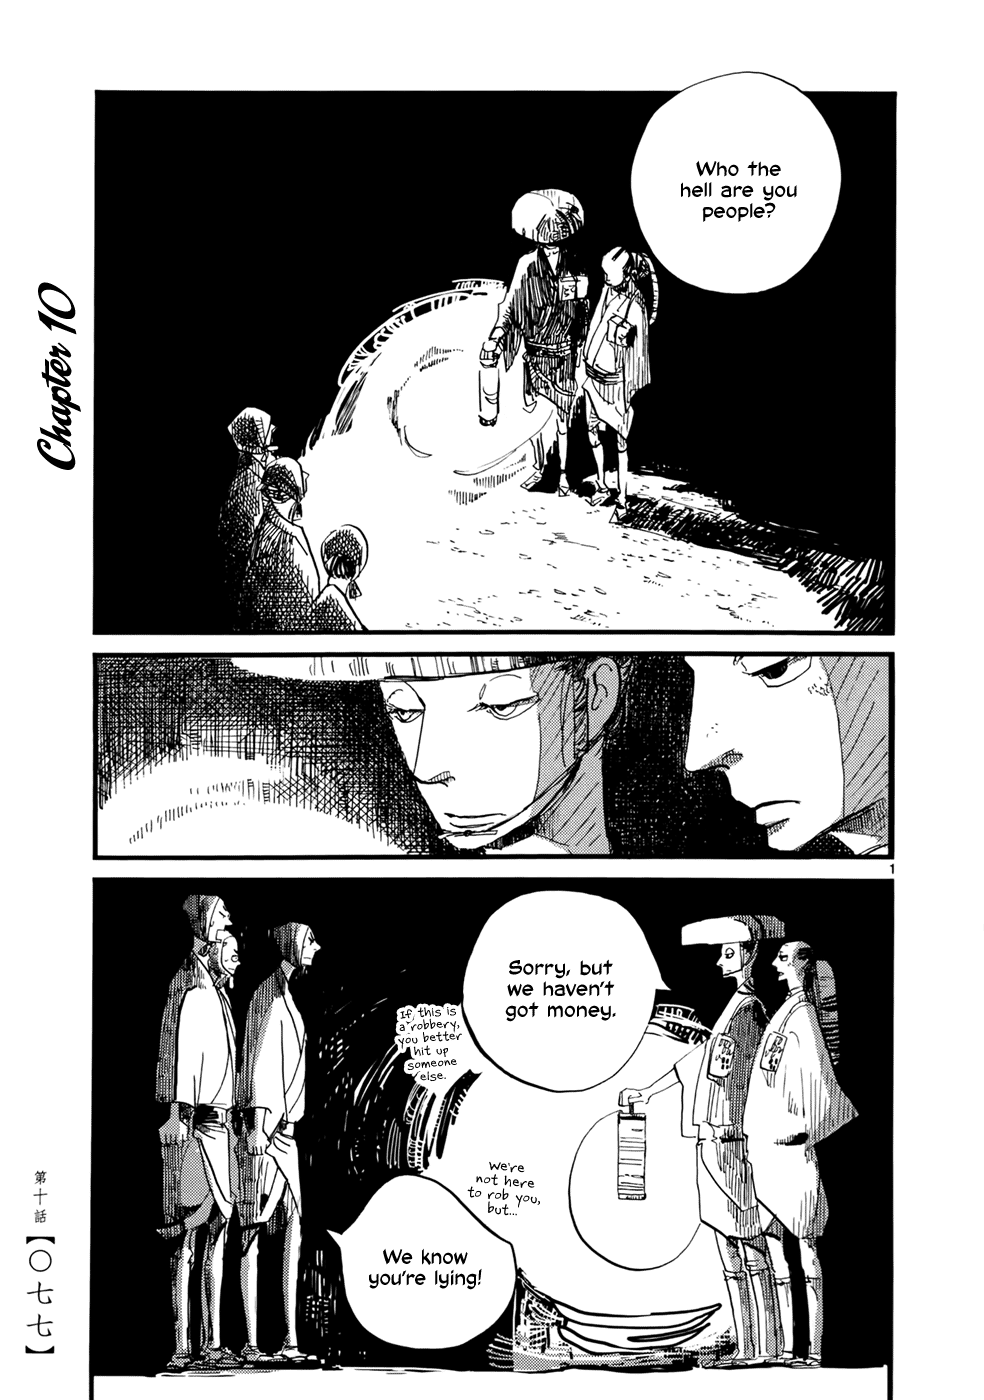 Futagashira - Page 2